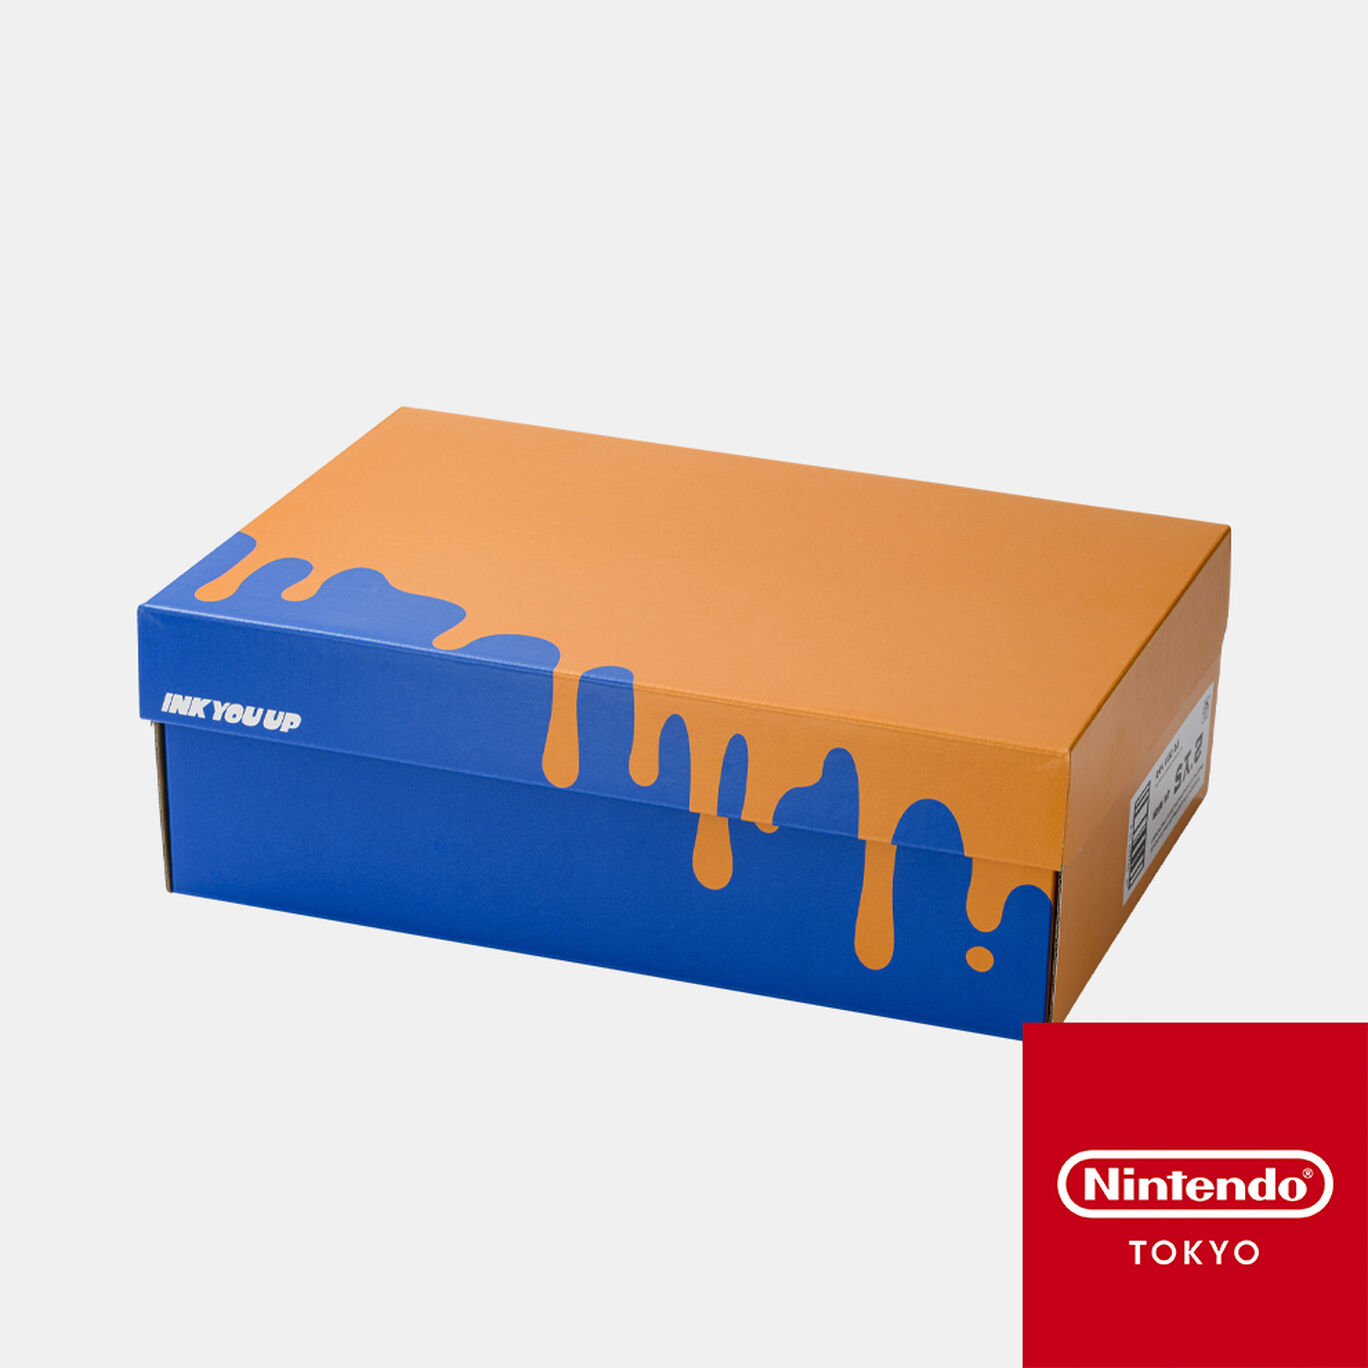 シューズボックス風収納BOX A INK YOU UP【Nintendo TOKYO/OSAKA取り扱い商品】